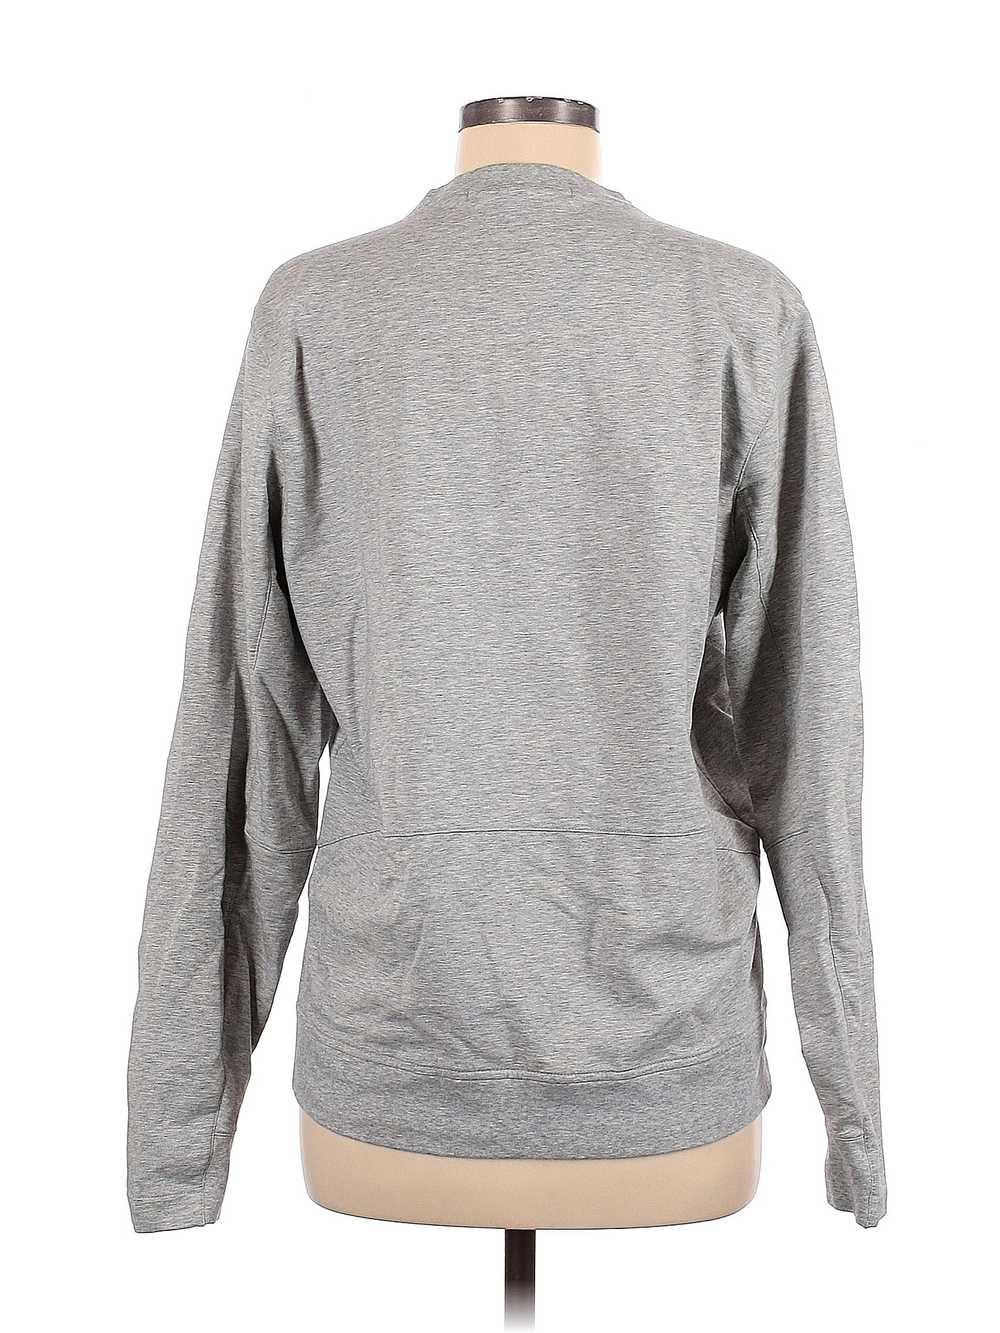 Assorted Brands Women Gray Sweatshirt M - image 2